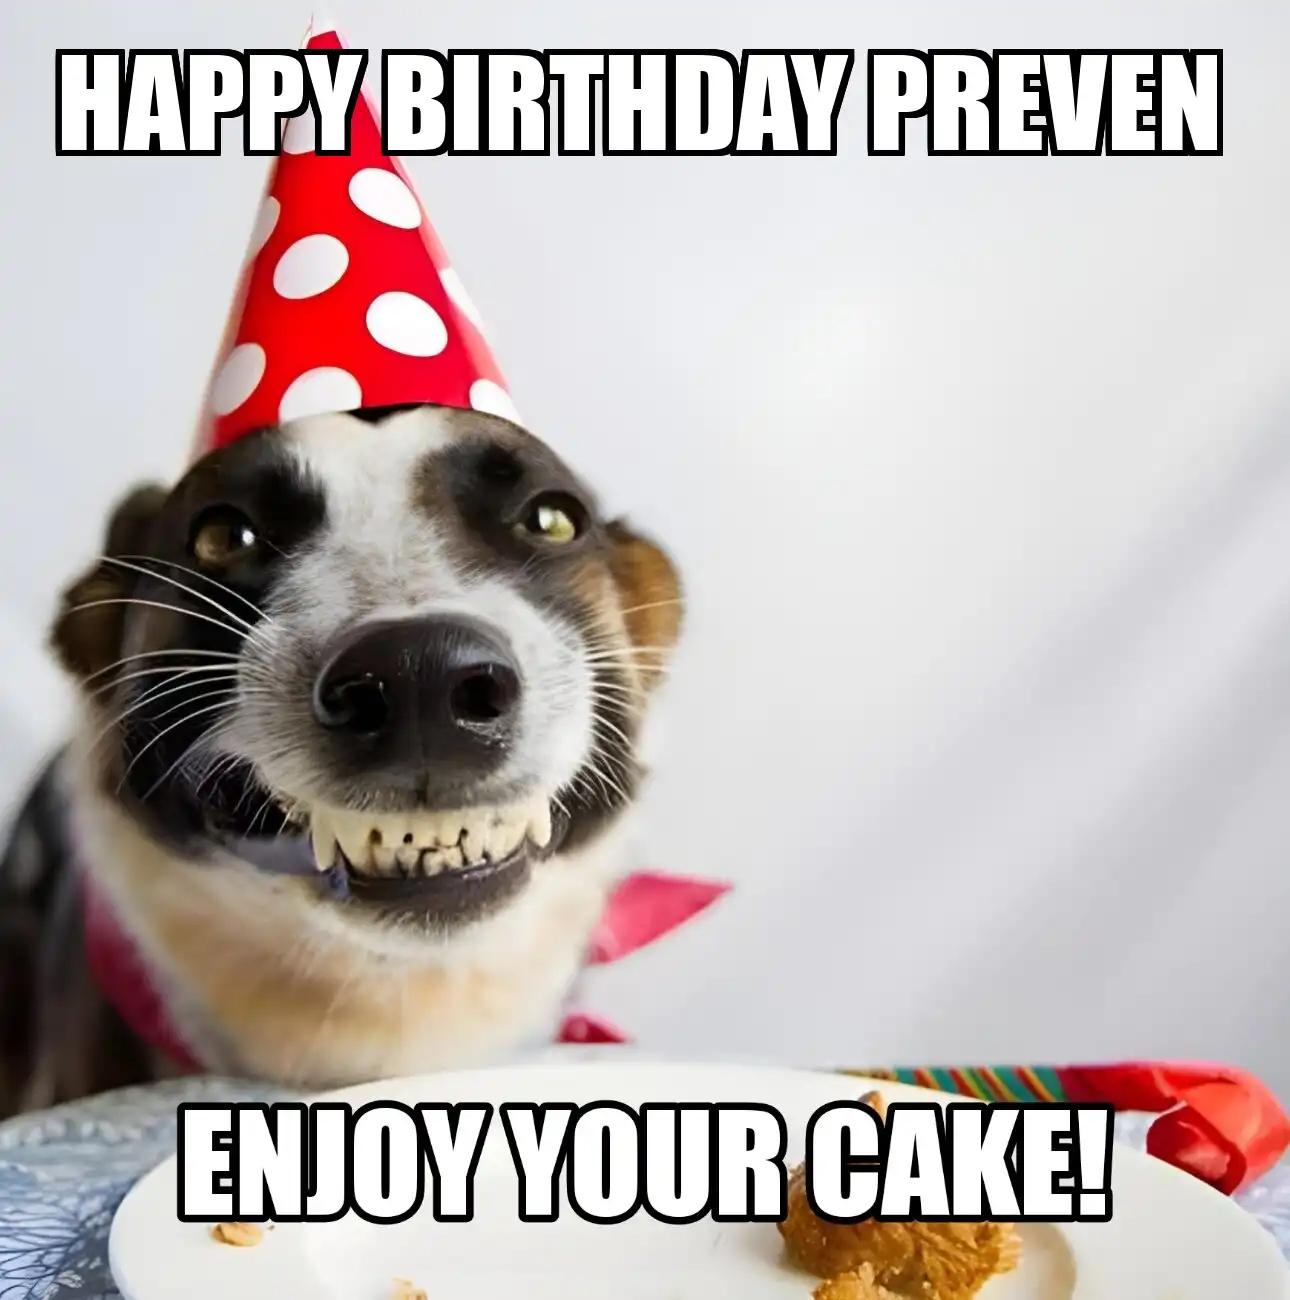 Happy Birthday Preven Enjoy Your Cake Dog Meme